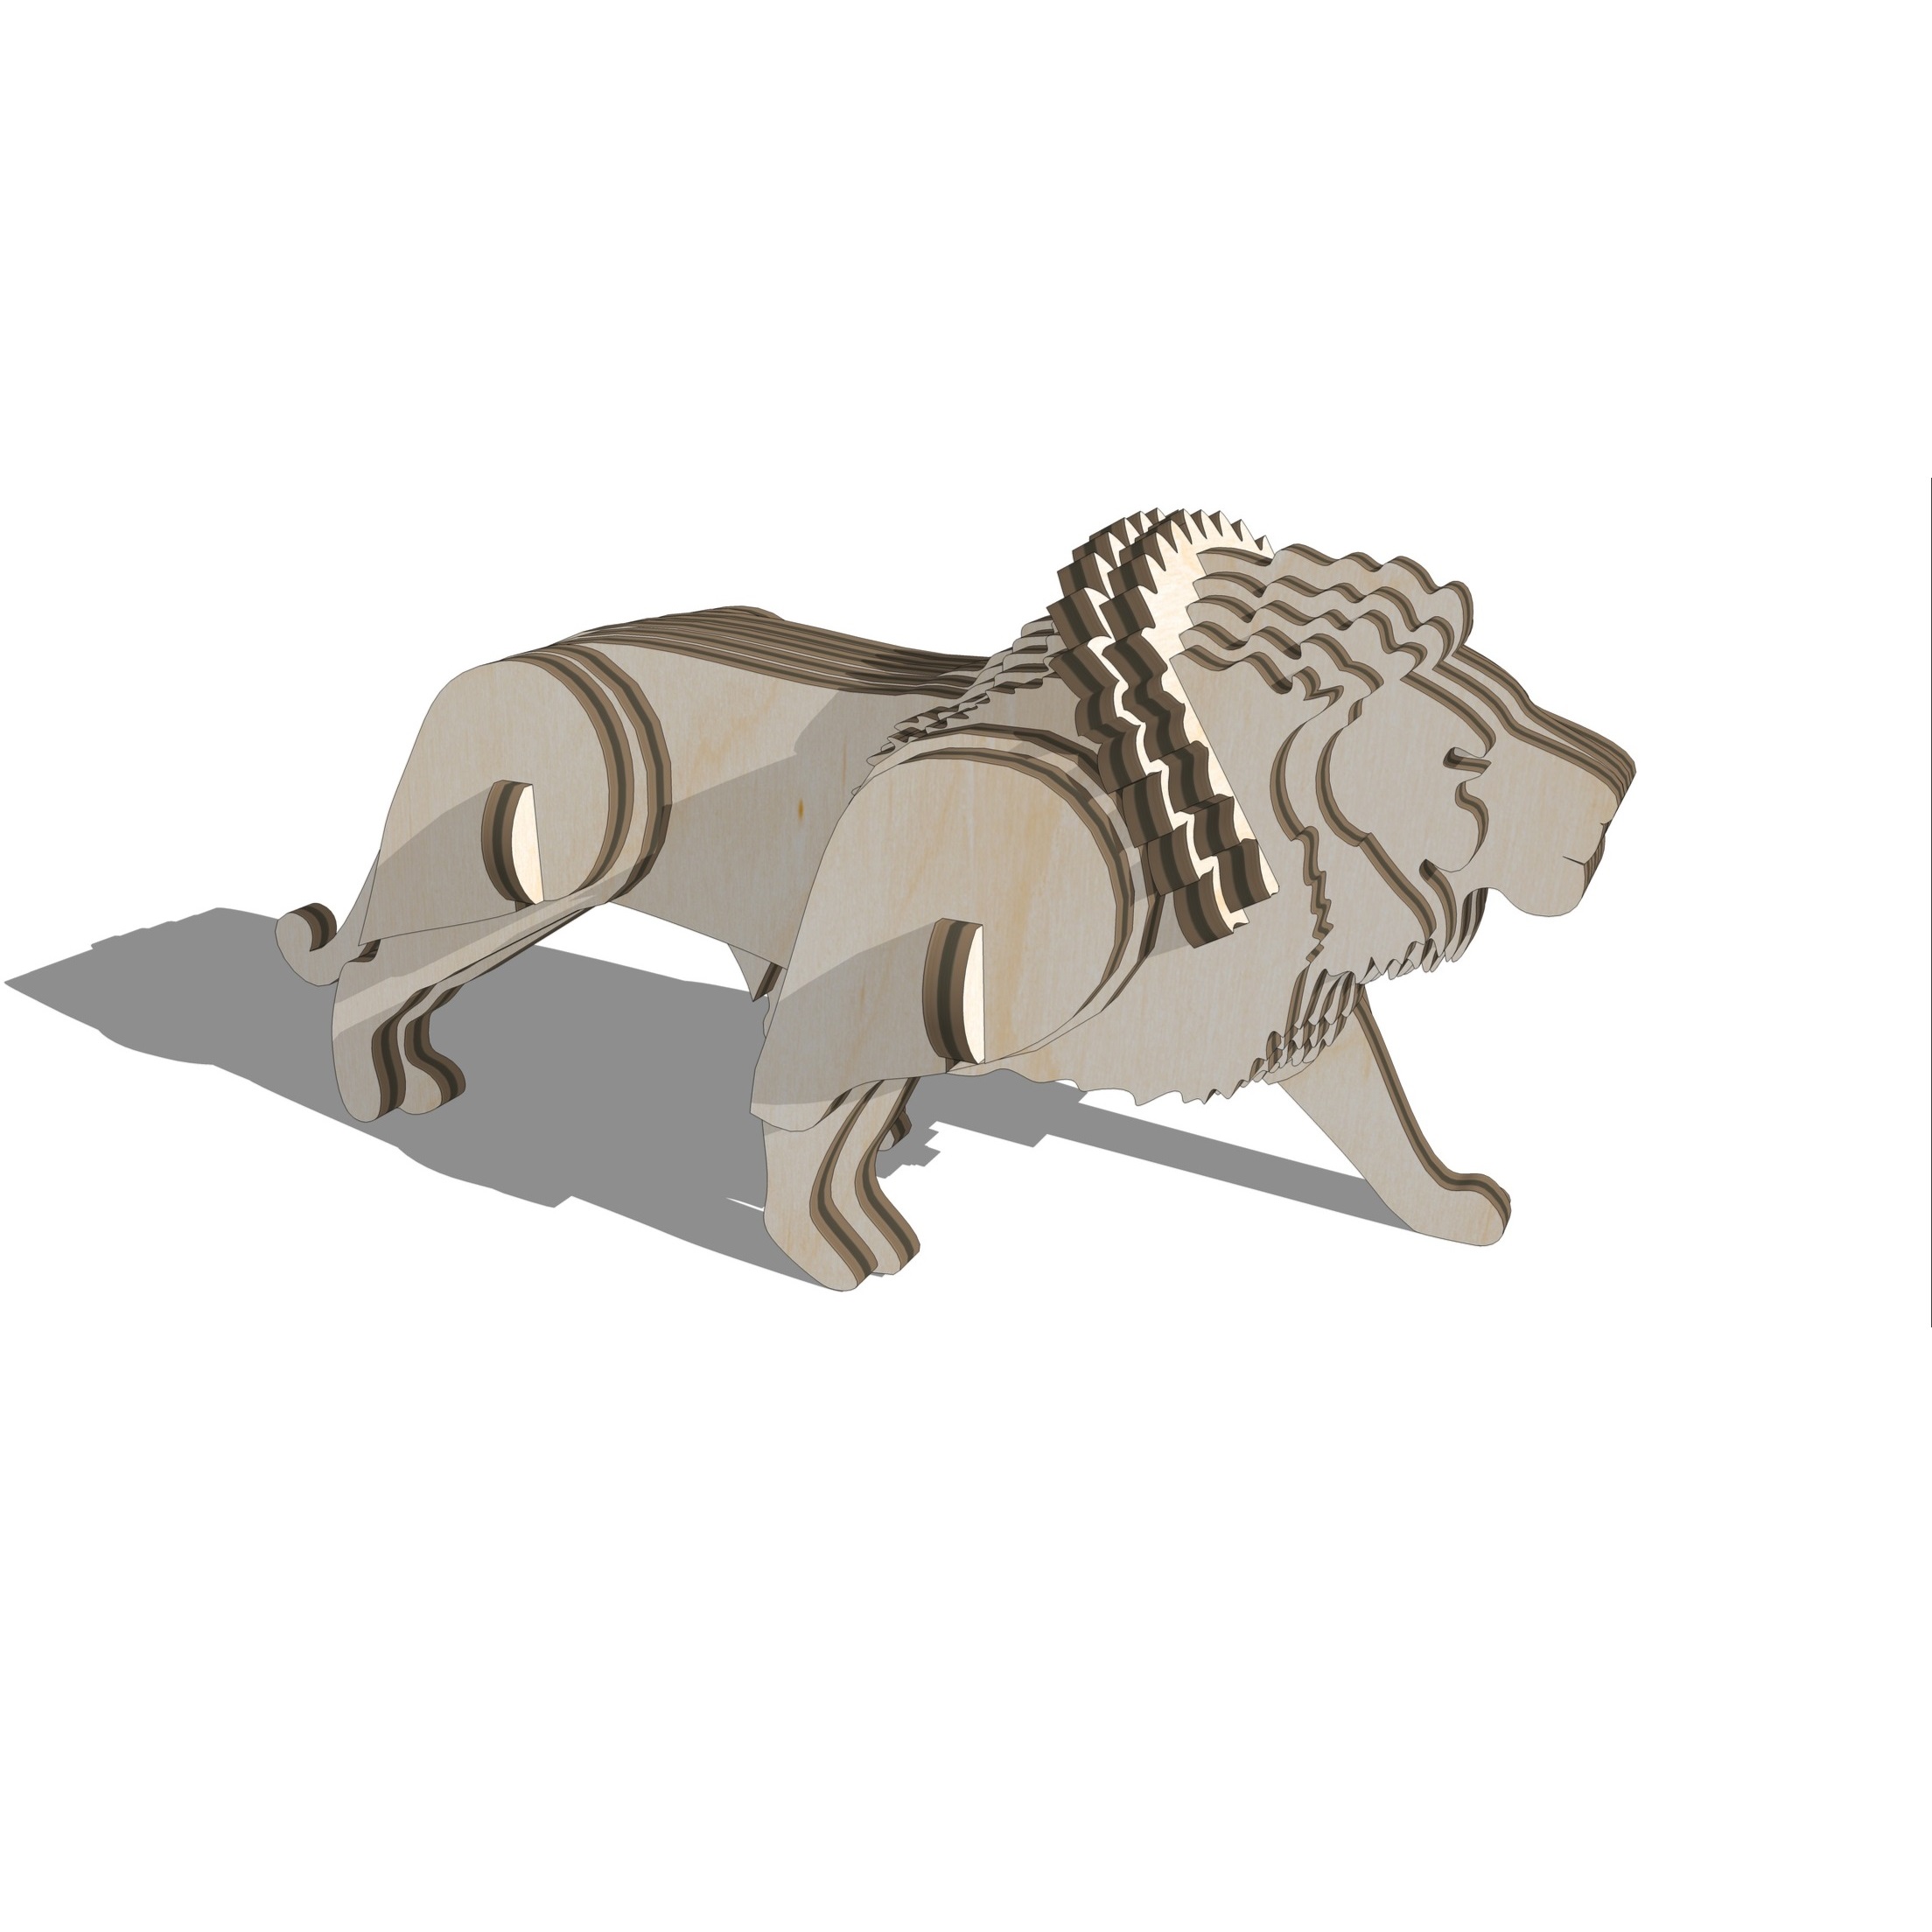 激光切割狮子 3D 拼图